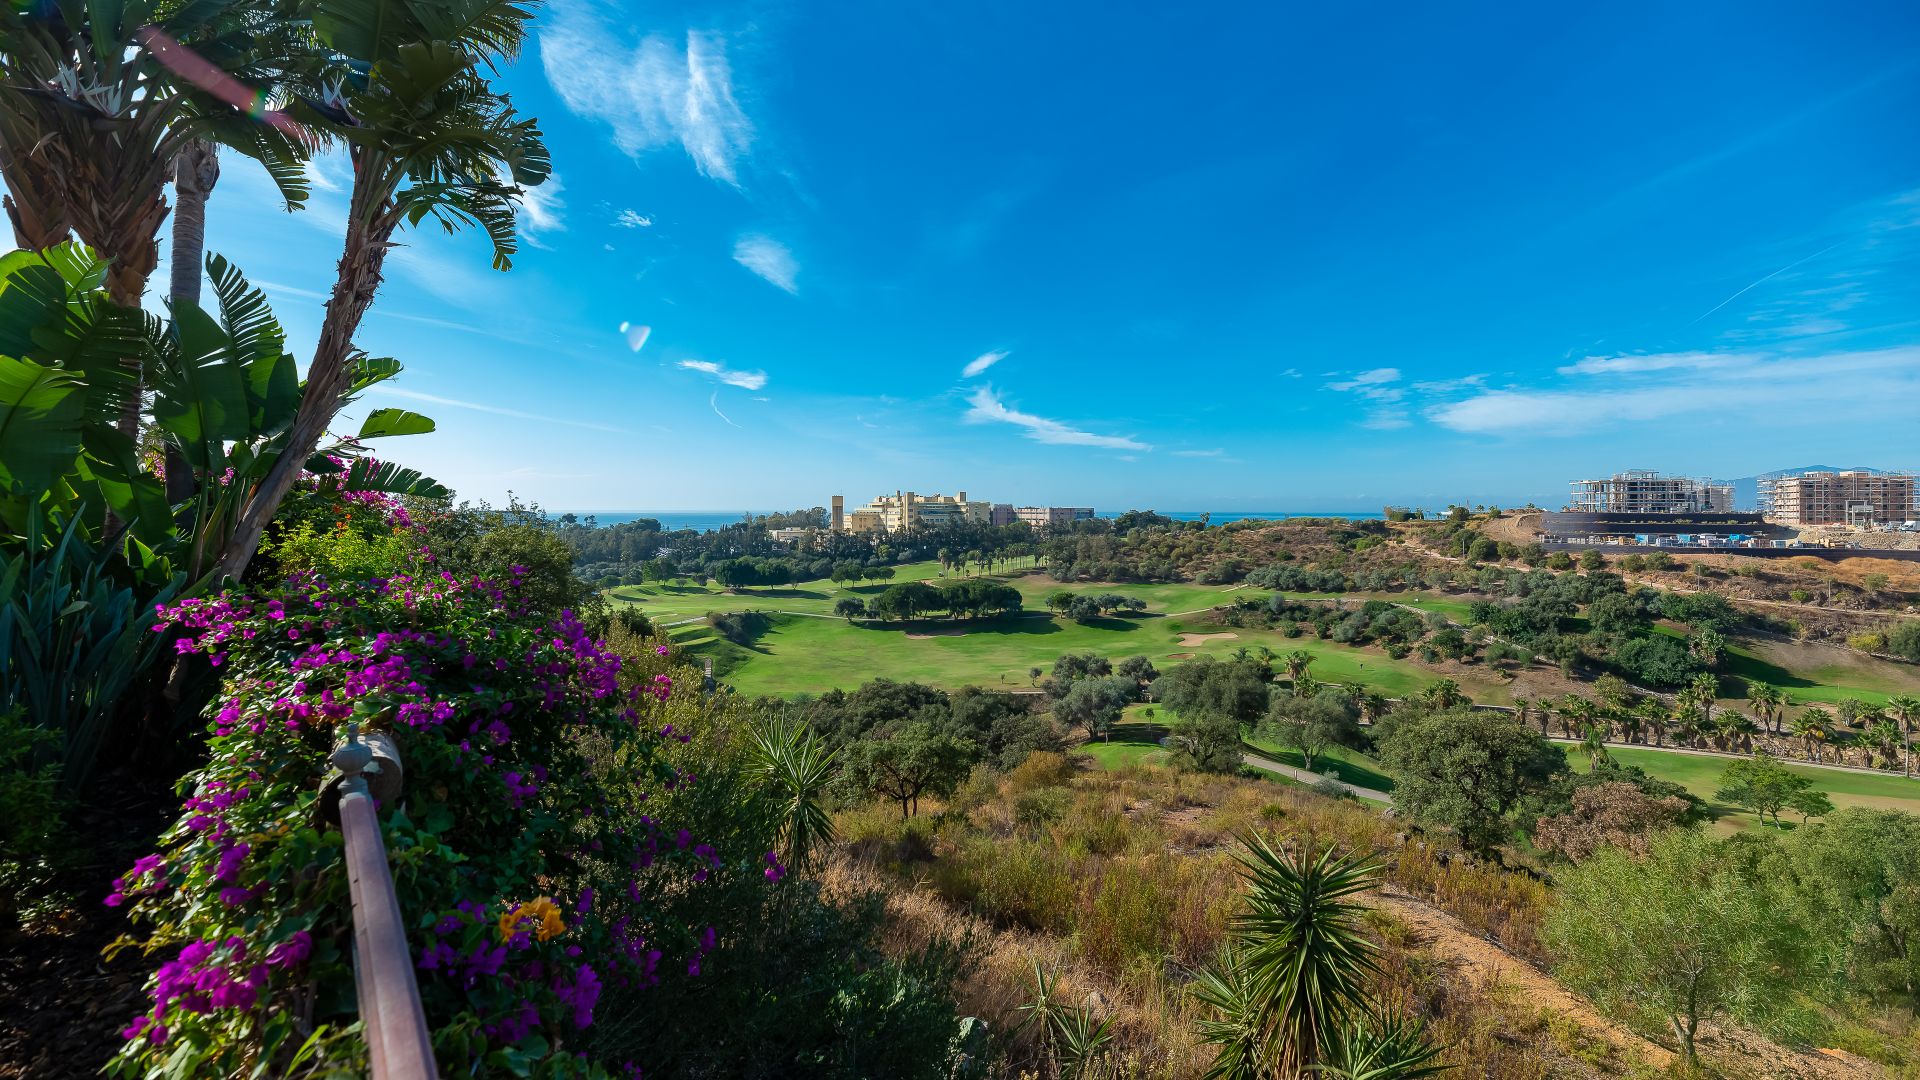 Family villa with open views in Santa Clara | Engel & Völkers Marbella